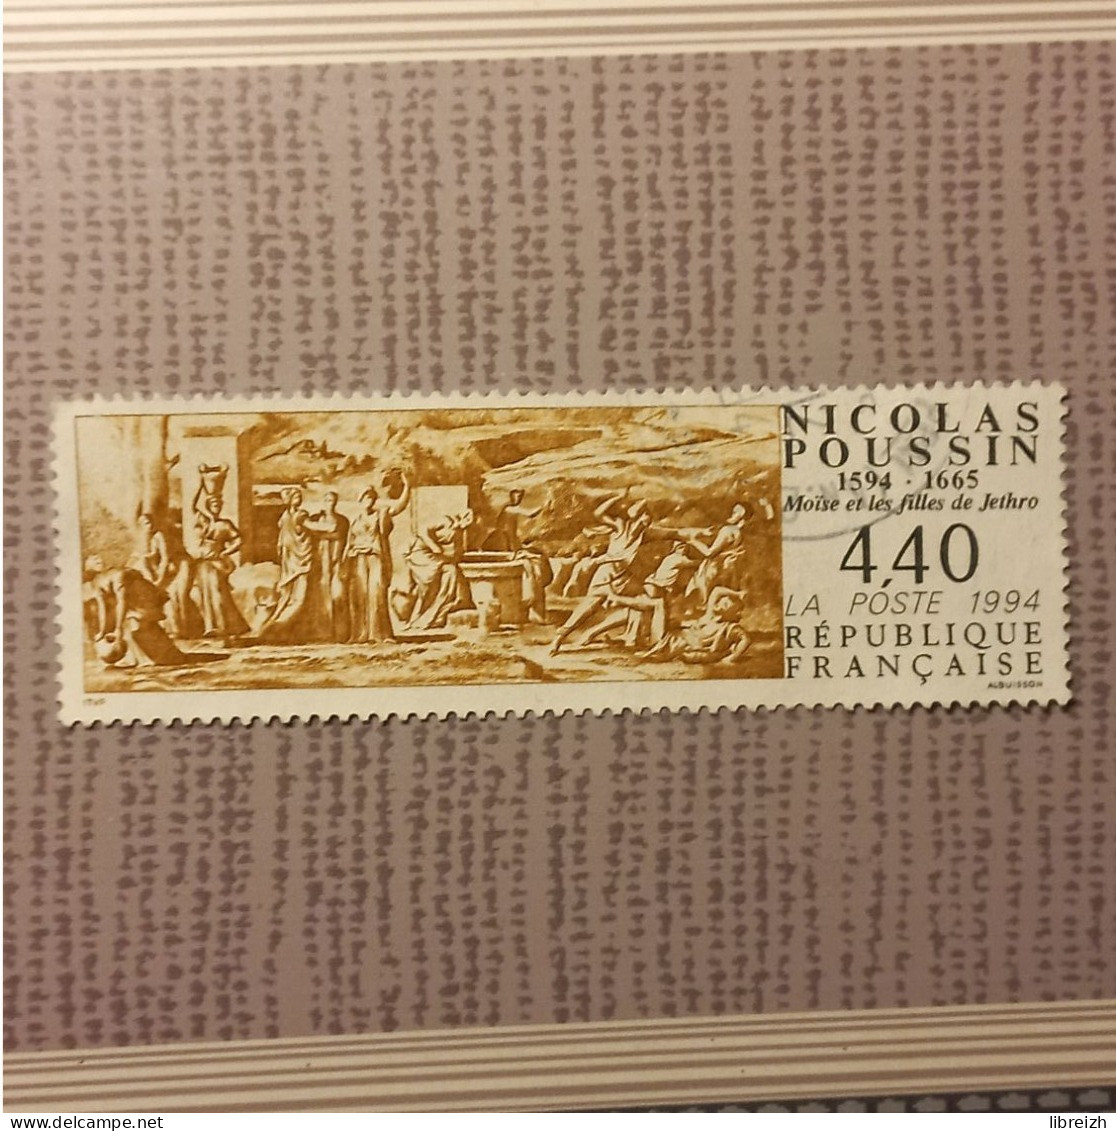 Nicolas Poussin  N° 2896  Année 1994 - Oblitérés